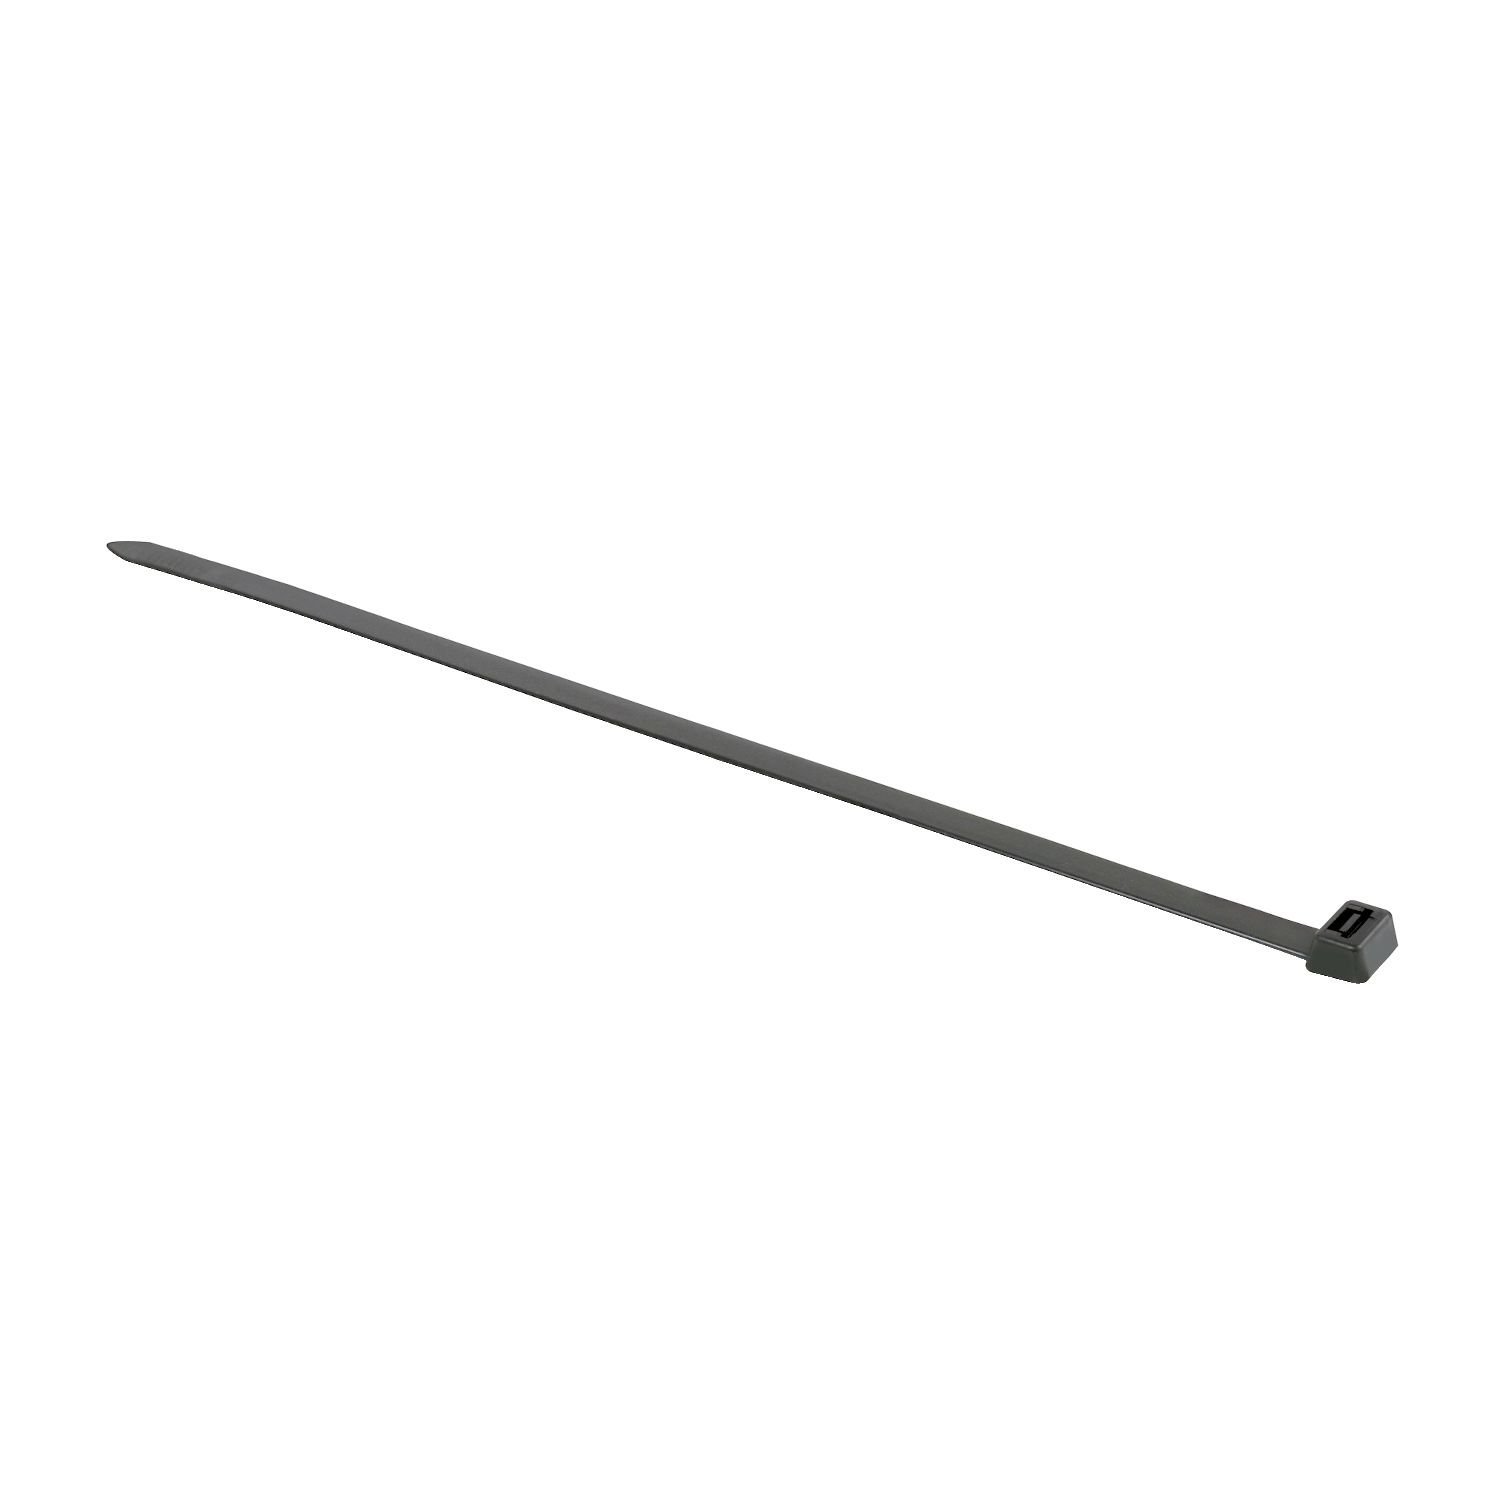 IMT46293 Thorsman - cable tie - black - 7.6 x 380 mm